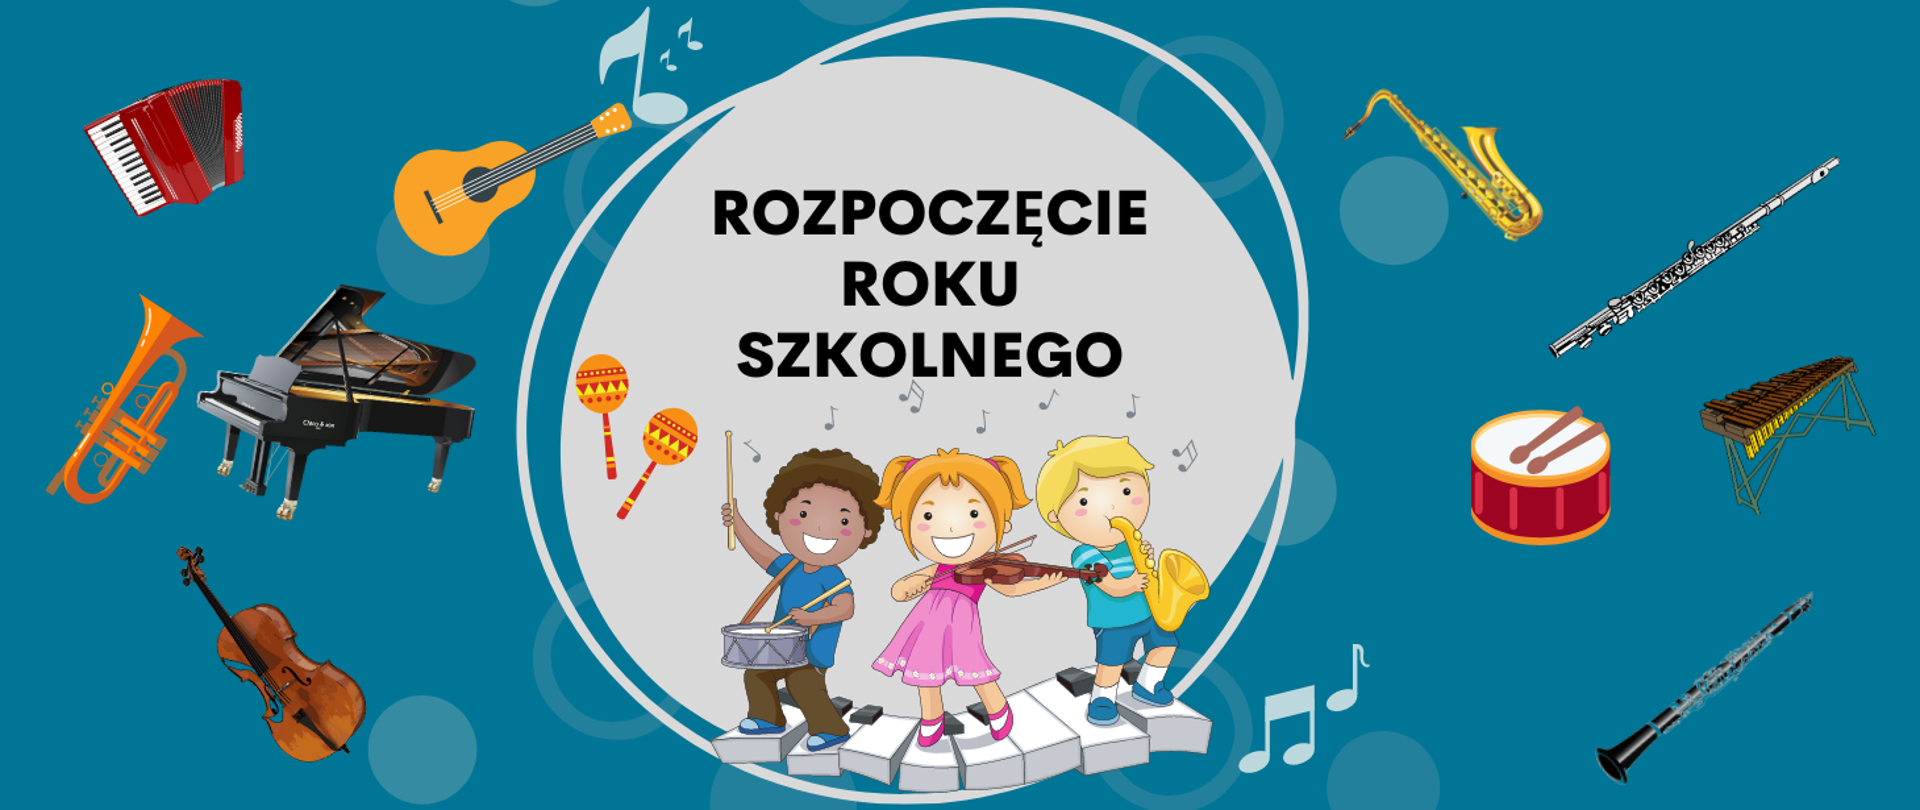 Niebieskie tło, na środku troje dzieci grających na instrumentach, nad nimi treść ROZPOCZĘCIE ROKU SZKOLNEGO, po prawej i lewej stronie różne instrumenty.